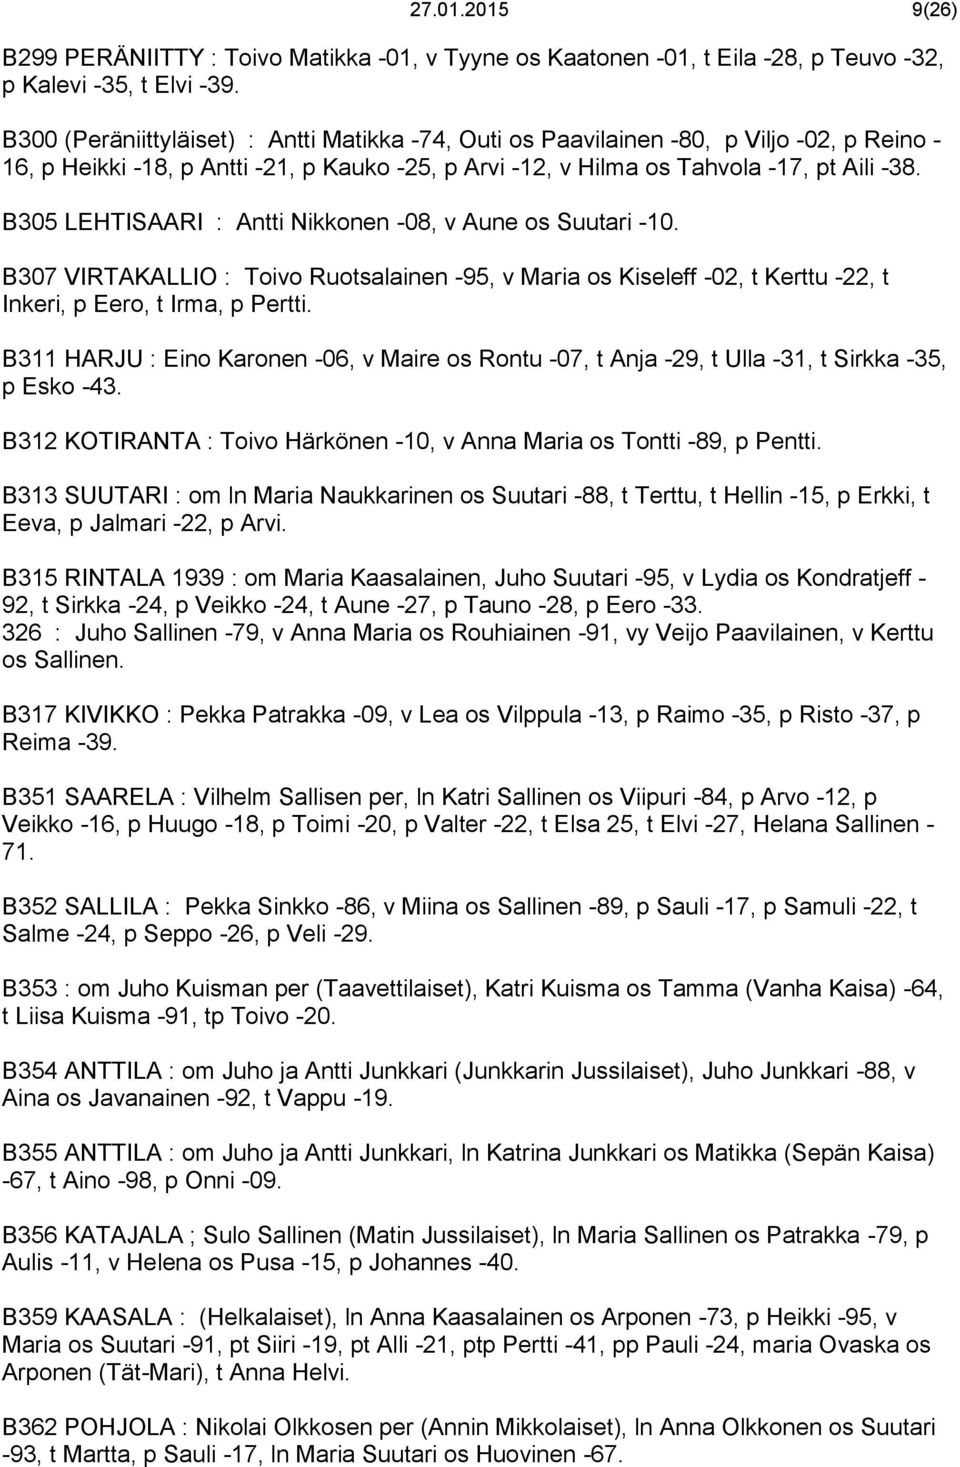 B305 LEHTISAARI : Antti Nikkonen -08, v Aune os Suutari -10. B307 VIRTAKALLIO : Toivo Ruotsalainen -95, v Maria os Kiseleff -02, t Kerttu -22, t Inkeri, p Eero, t Irma, p Pertti.